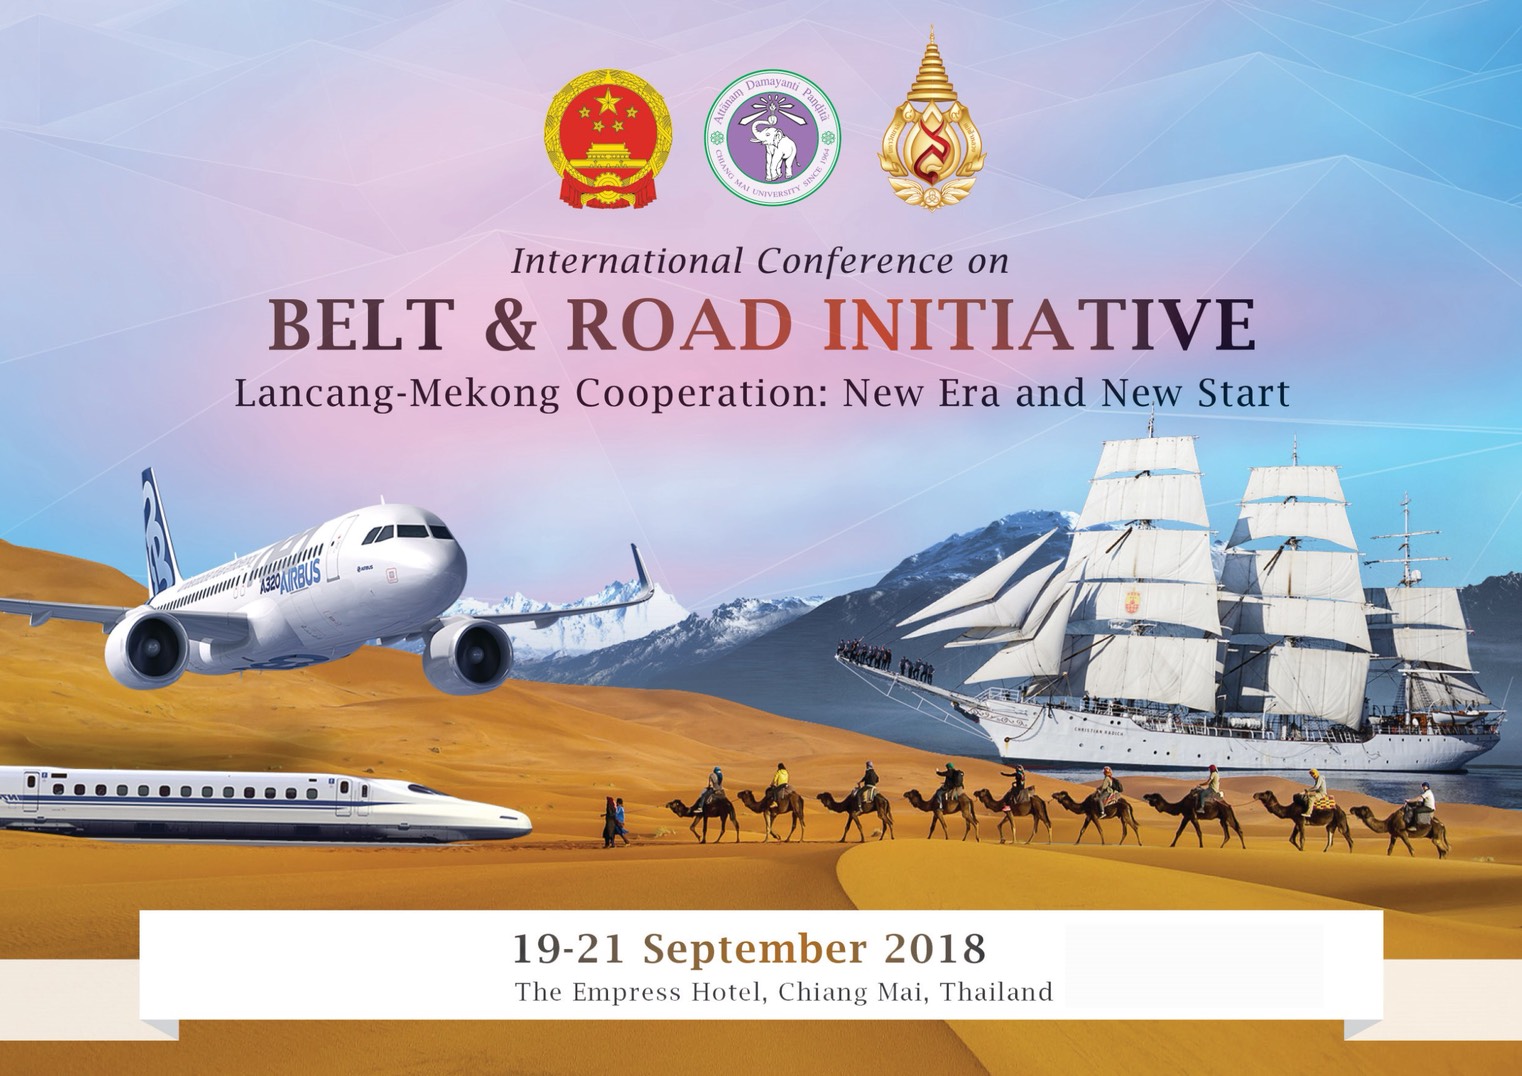 เชียงใหม่  ///  มช. พร้อมเป็นเจ้าภาพจัดประชุมนานาชาติ International Conference Belt and Road Initiative Lancang-Mekong Cooperation: New Era and New Start